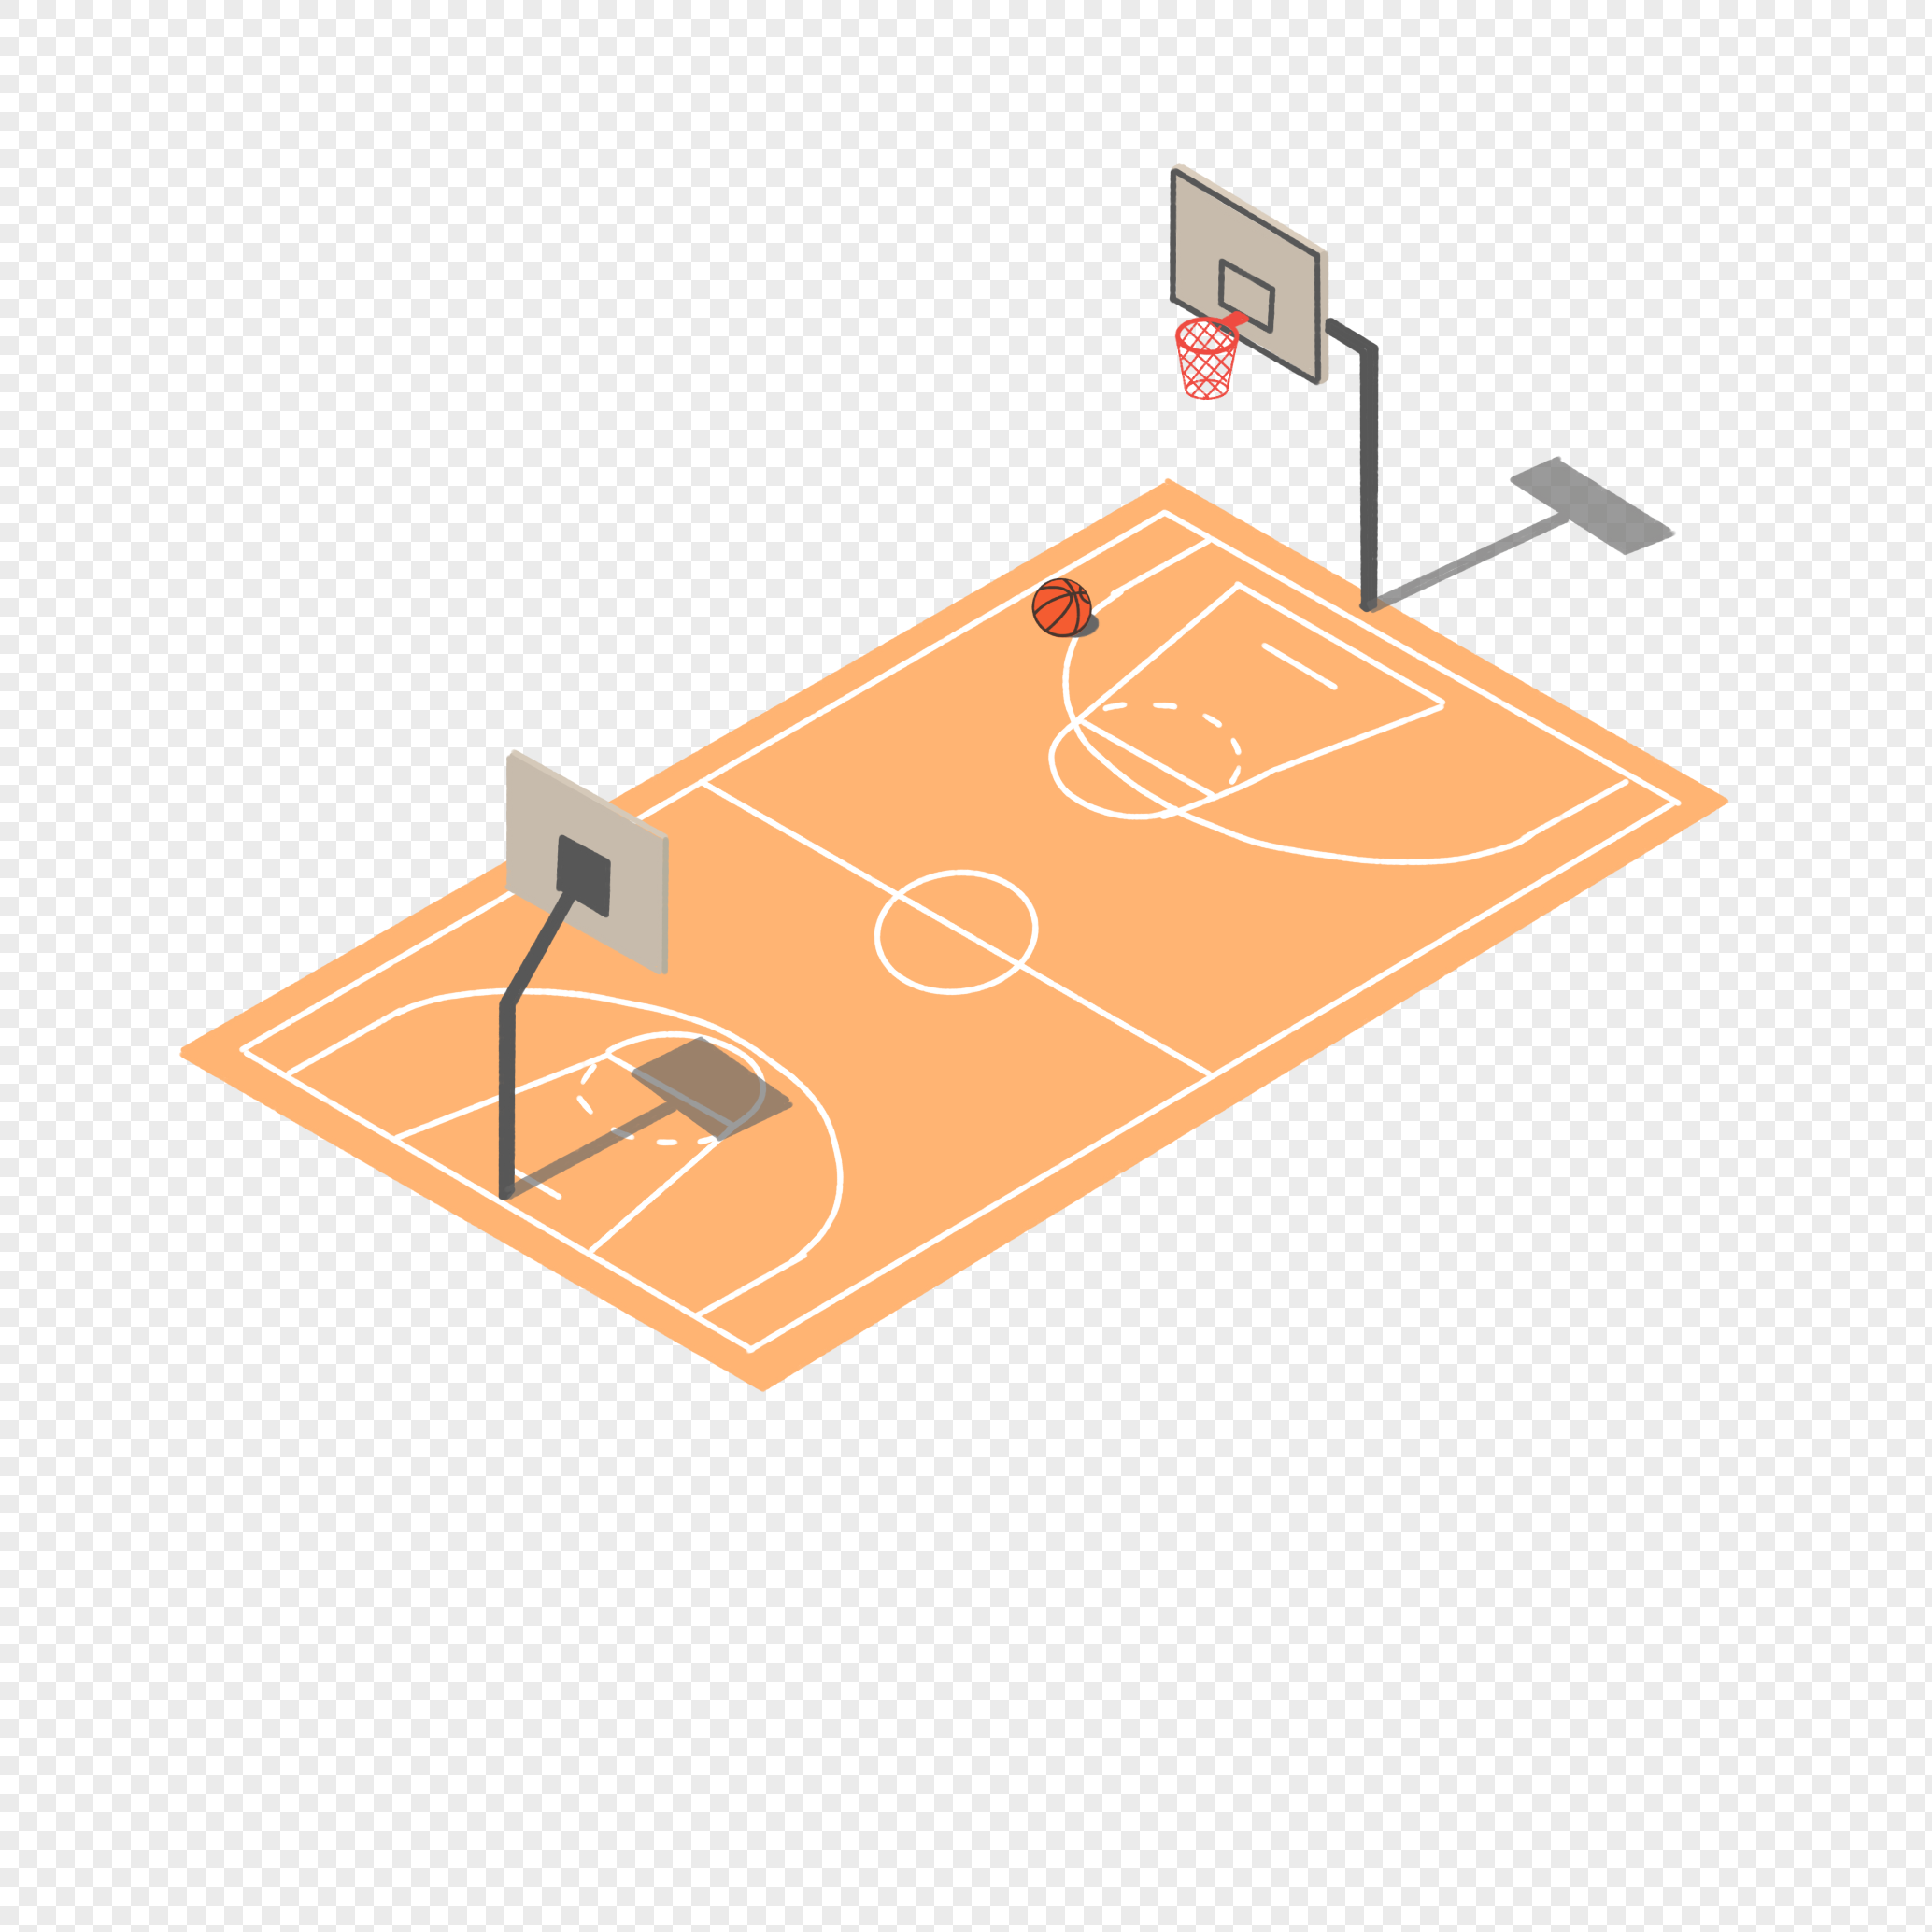 Баскетбольная площадка вид сбоку